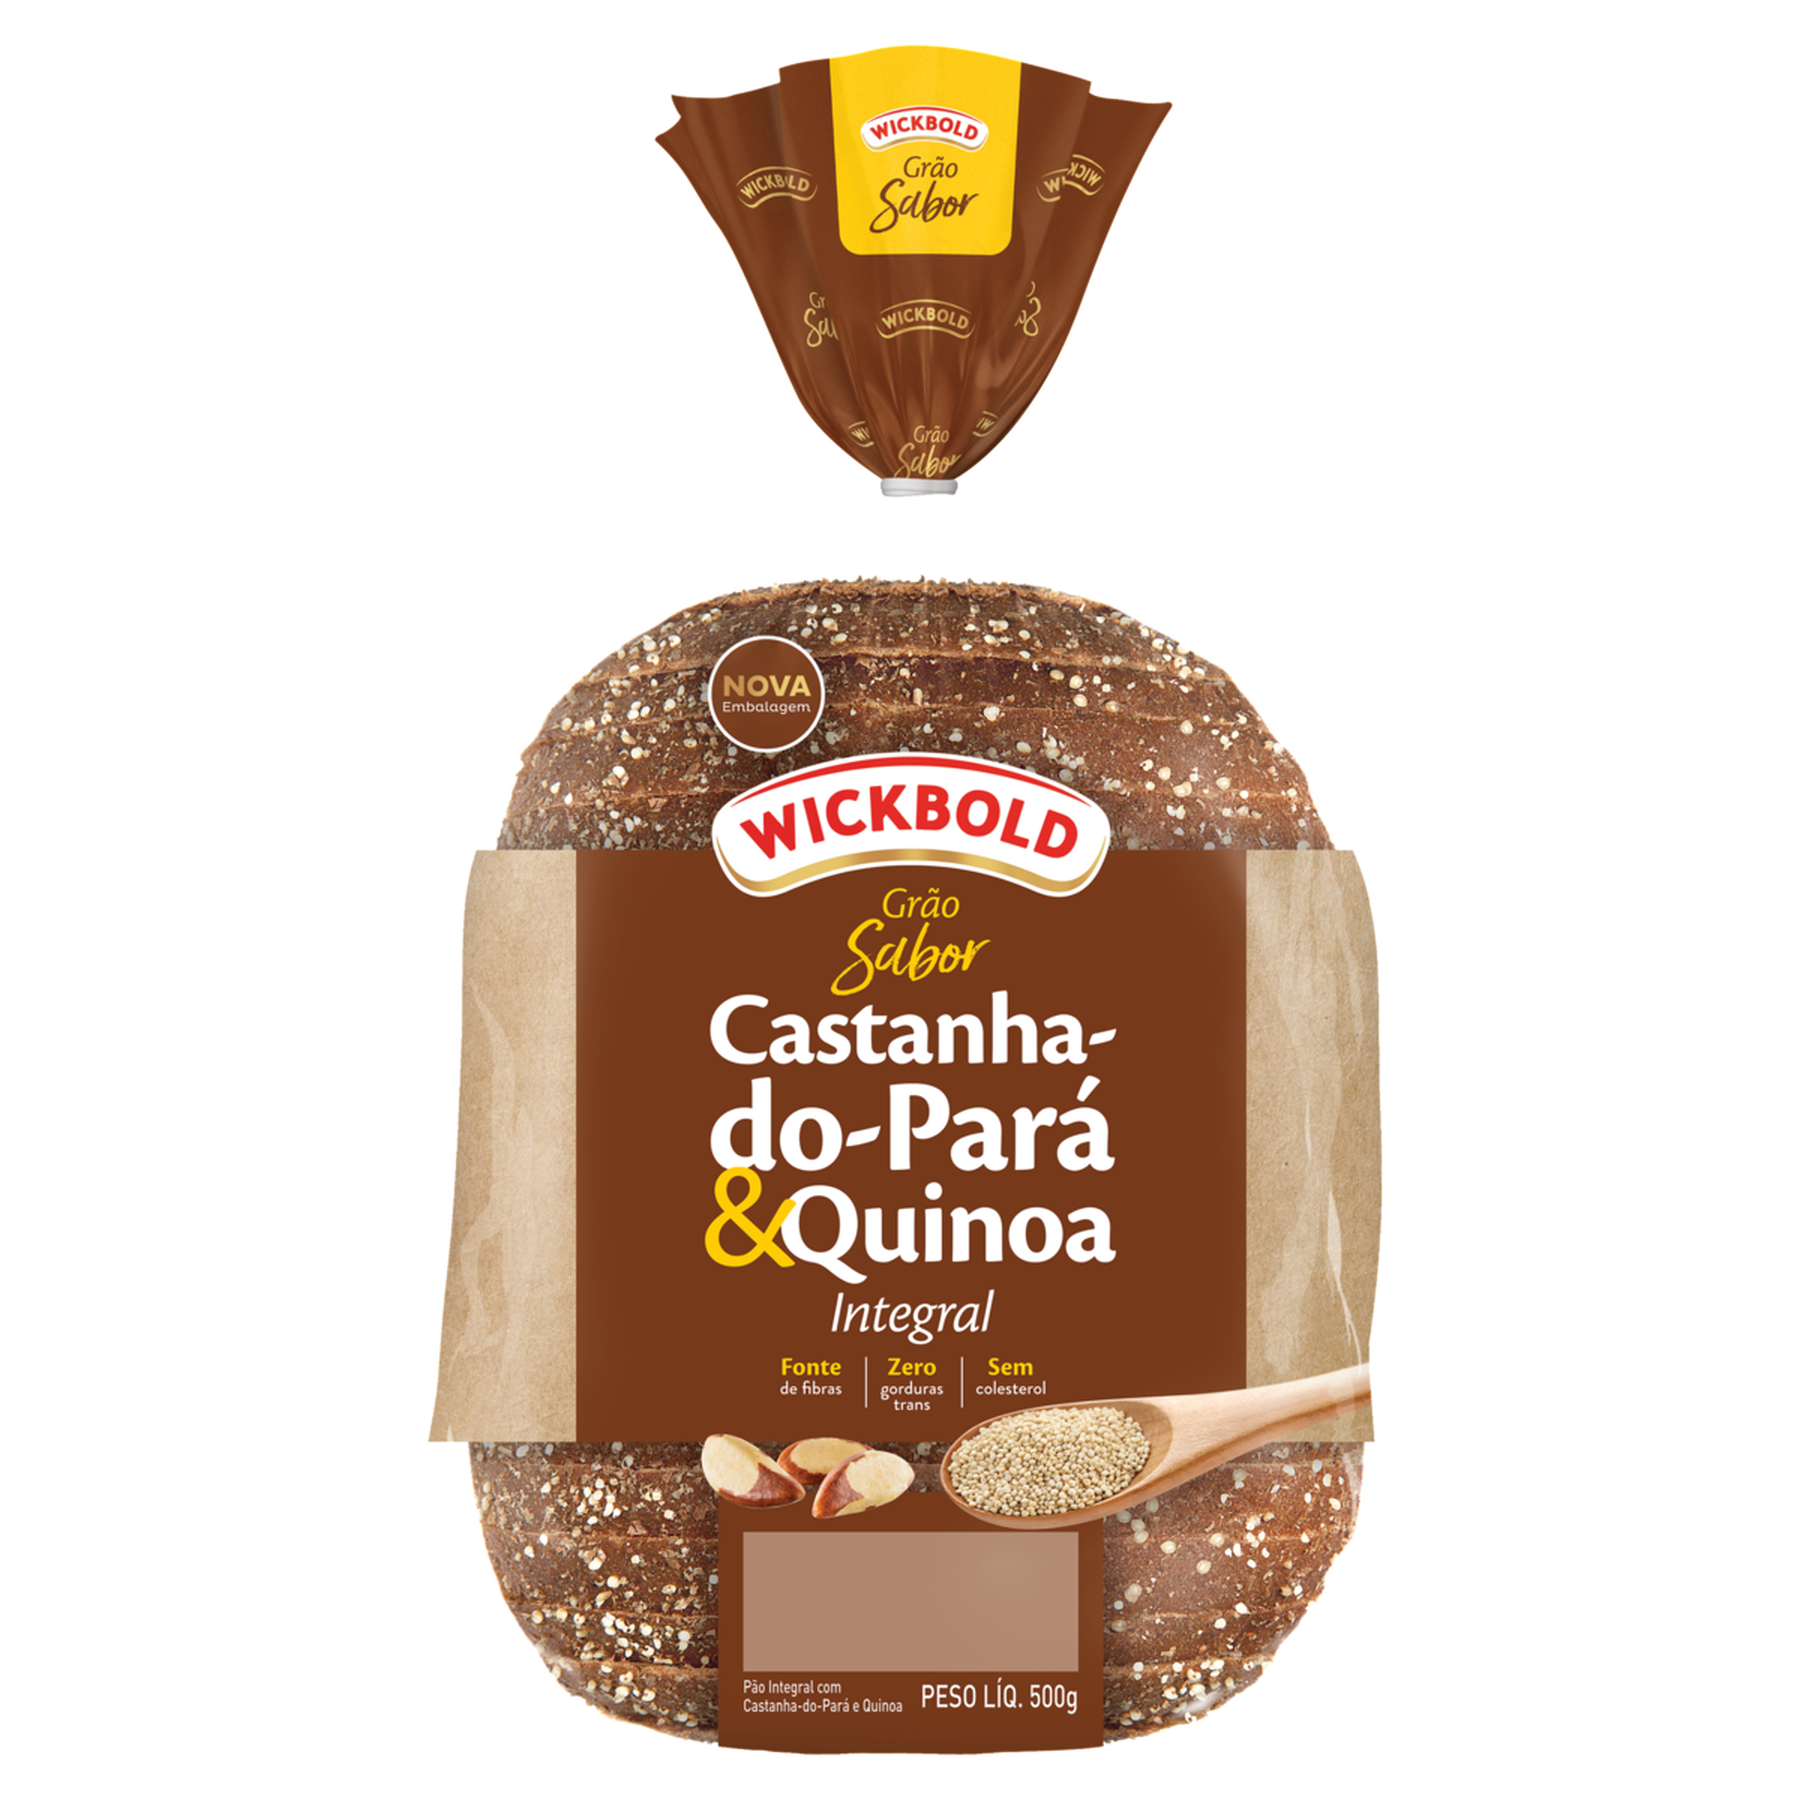 Pão de Forma 37,8% Integral Castanha-do-Pará e Quinoa Wickbold Grão Sabor Pacote 500g